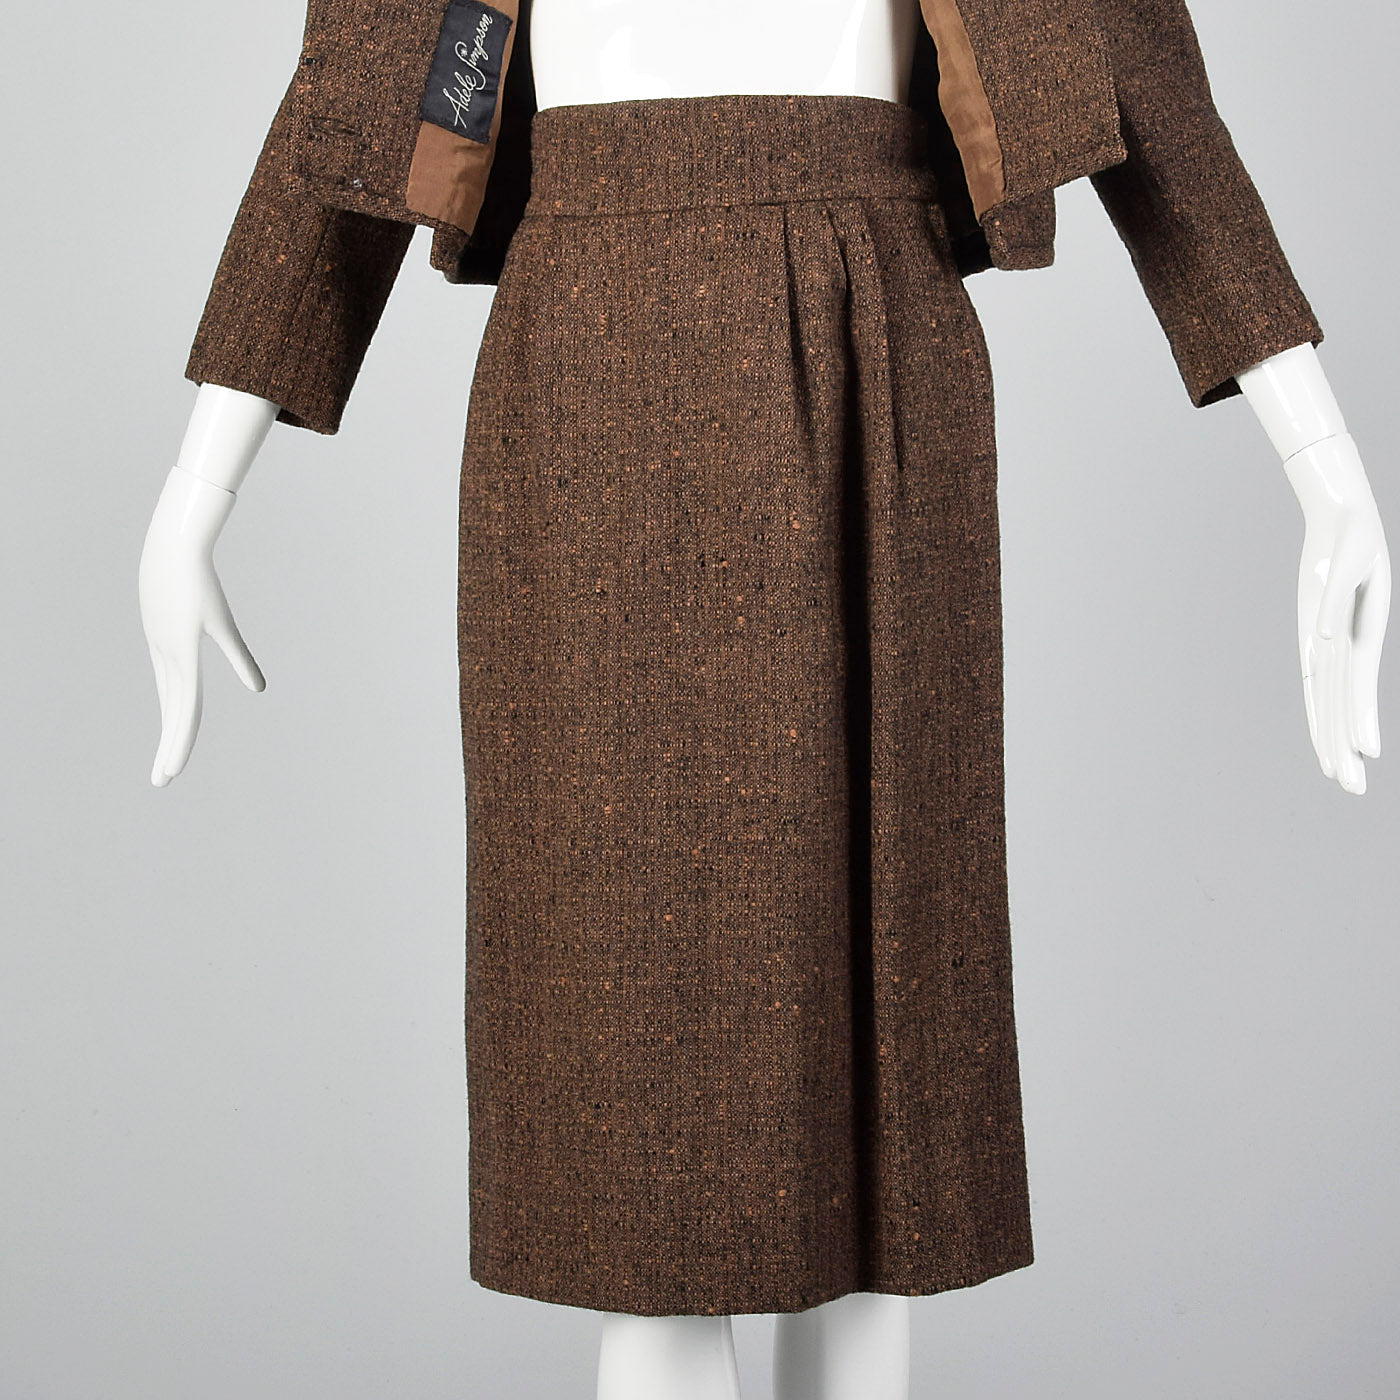 1950s Adele Simpson 28 Shop Wool Tweed Skirt Suit in Brown and Black